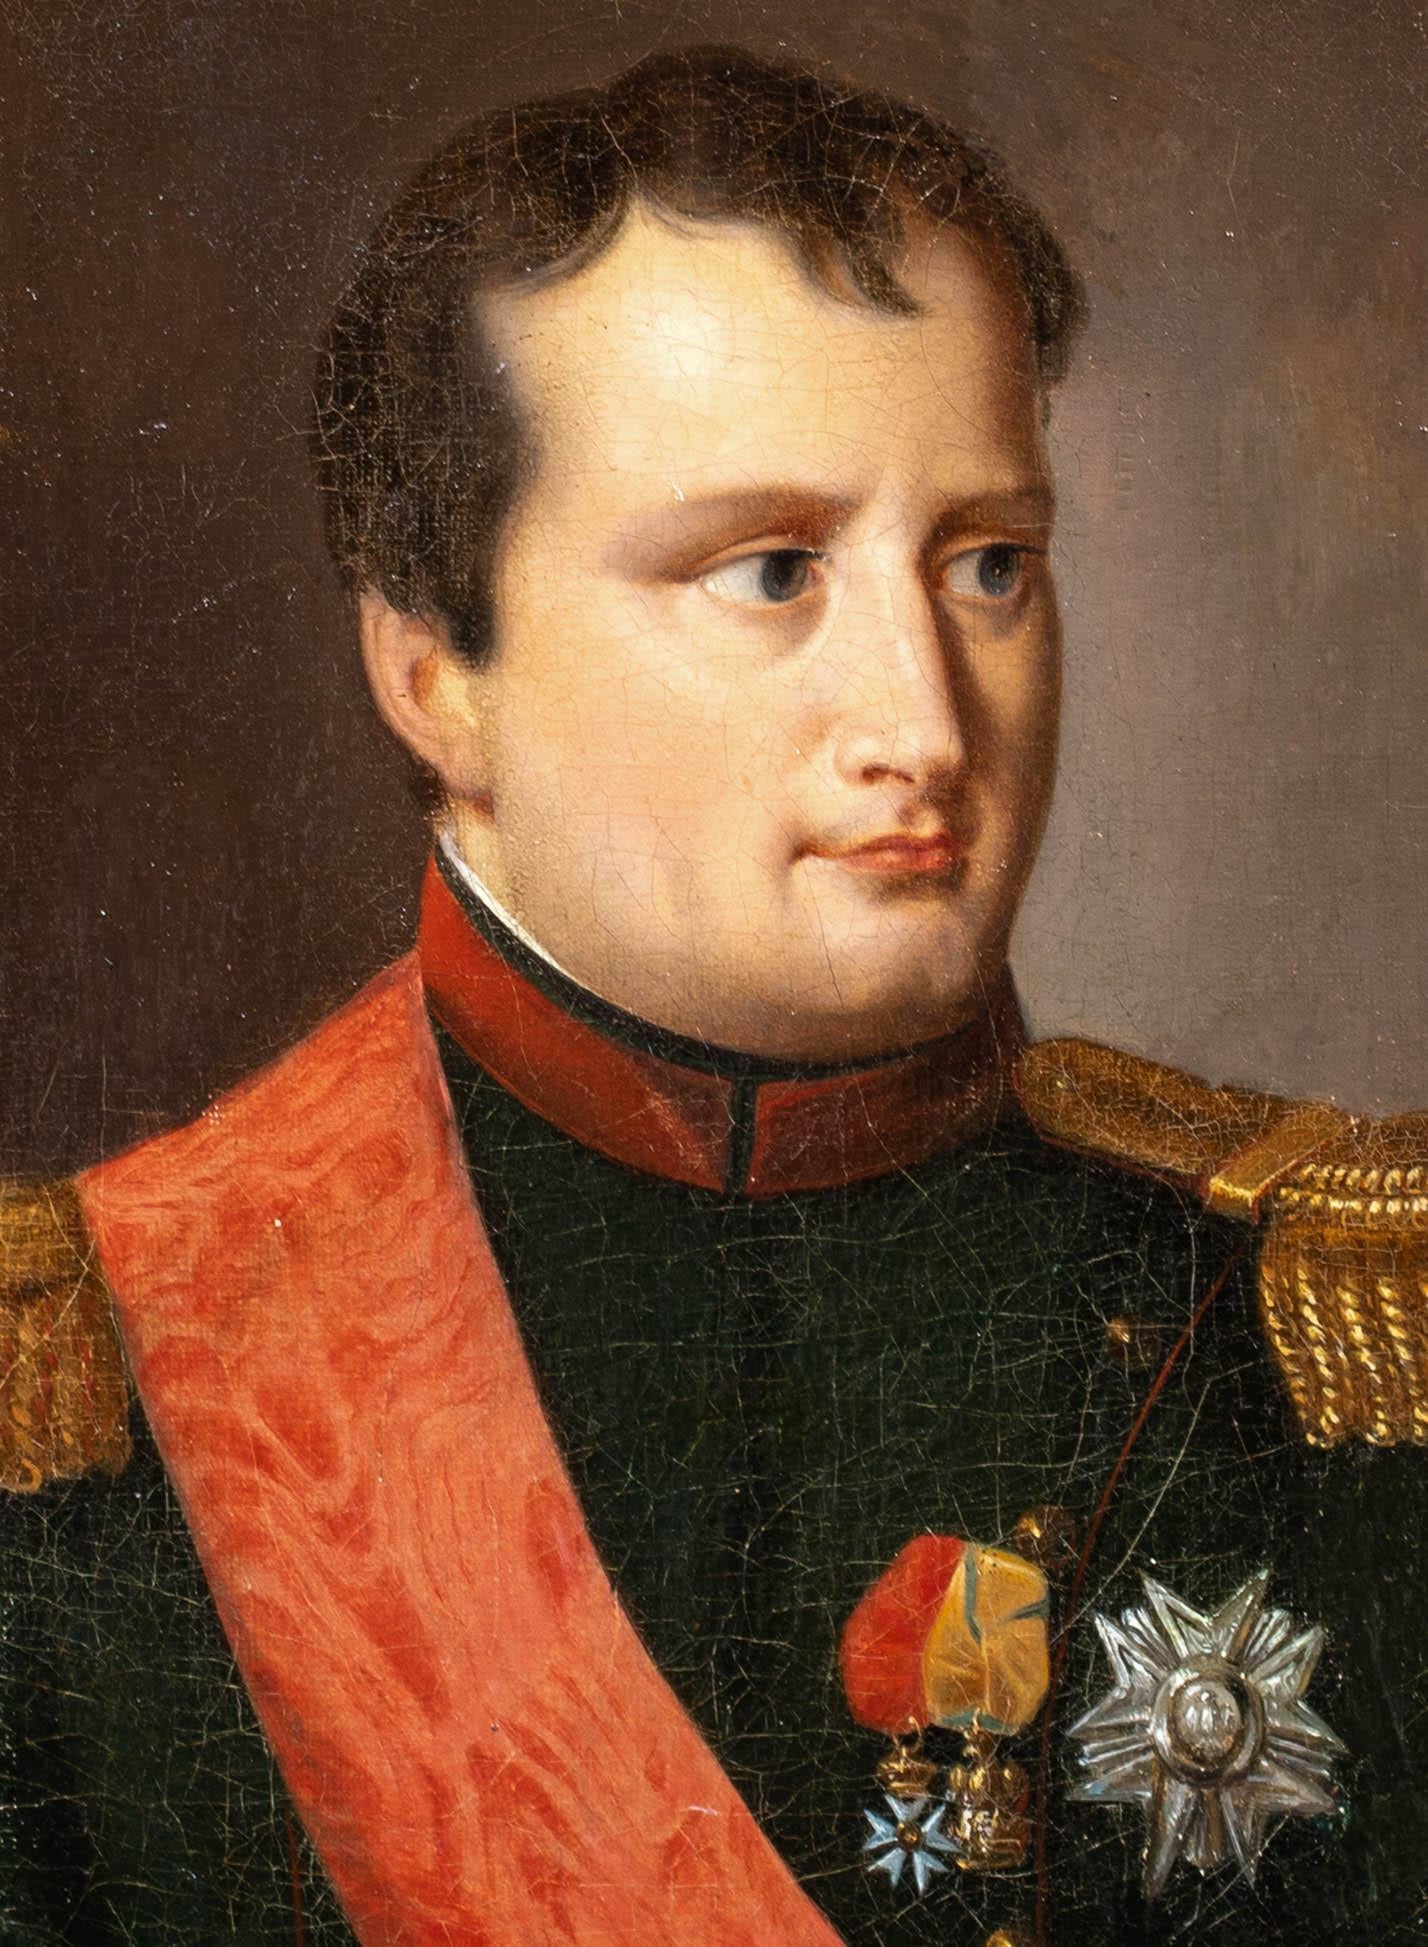 Portrait de Napoléon Bonaparte (1760-1821), XIXe siècle  École française  1